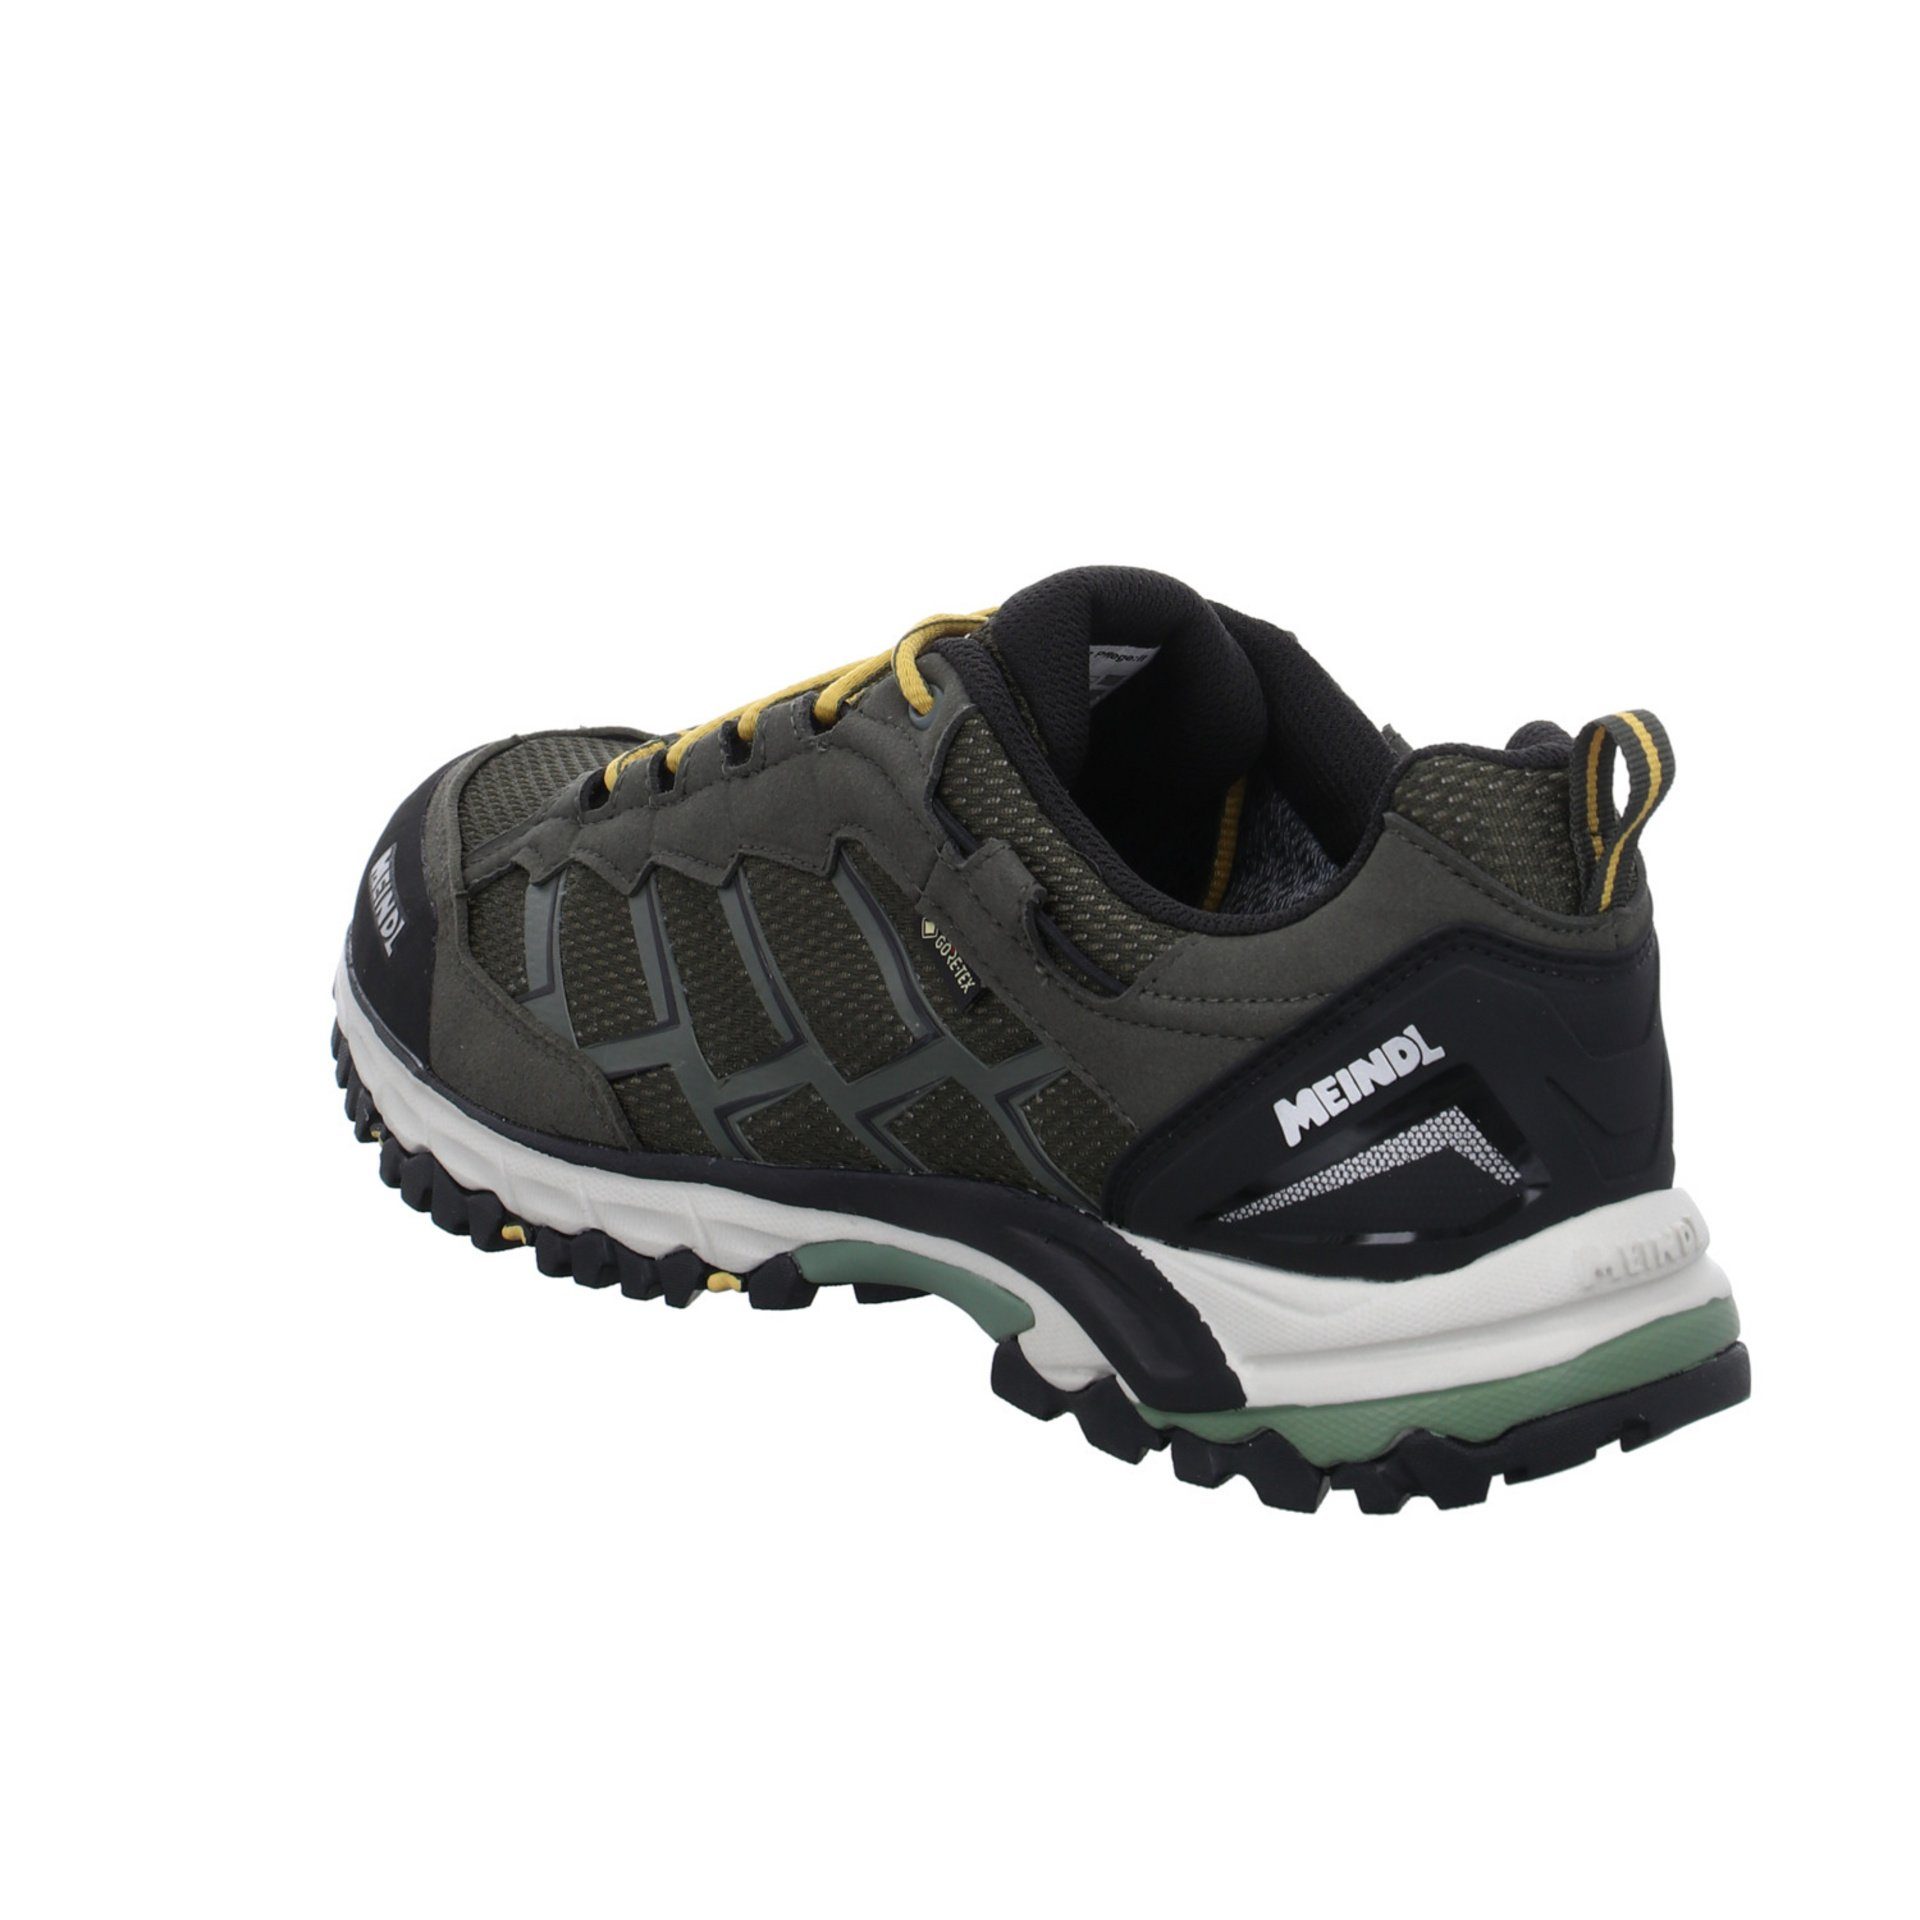 Meindl Herren Outdoor Schuhe Outdoorschuh GTX Caribe grün Synthetikkombination Outdoorschuh